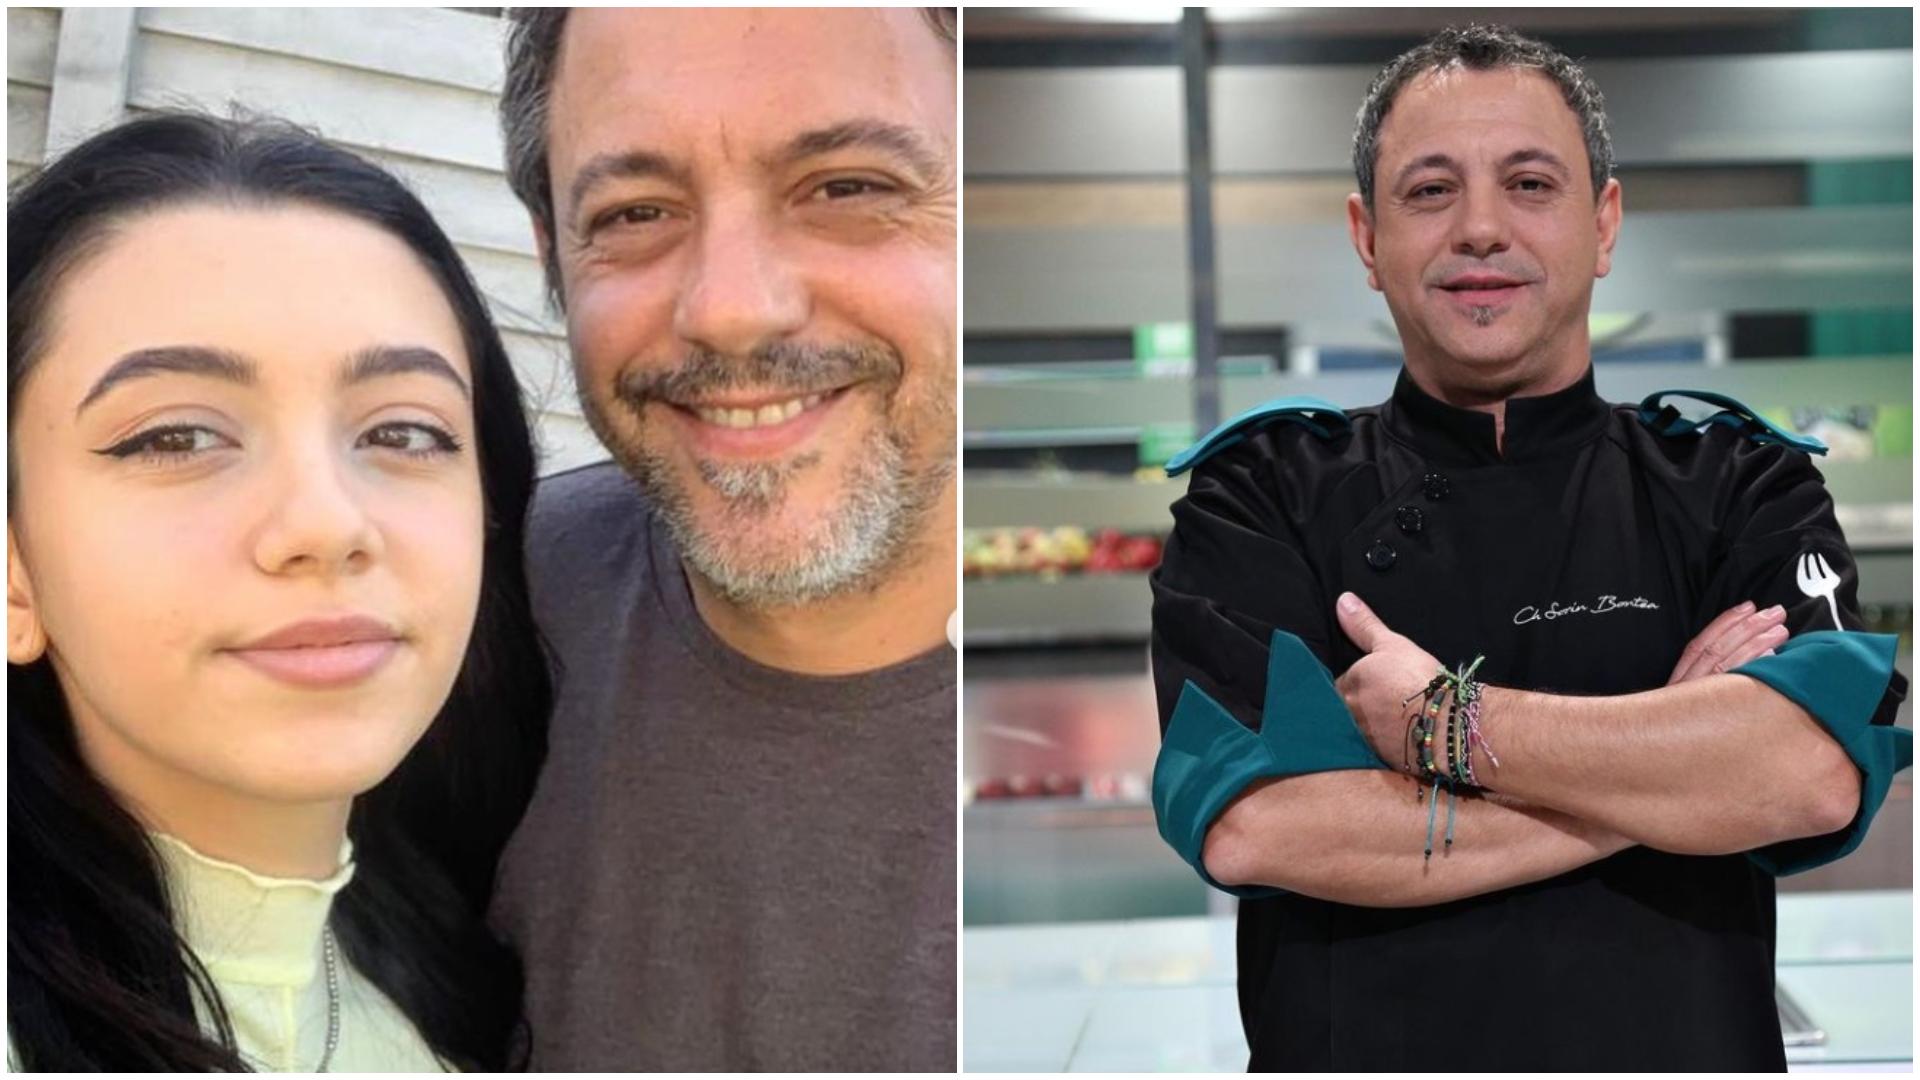 Colaj cu Miruna și Sorin Bontea. În prima imagine selfie tată-fiică, în a doua imagine chef Sorin Bontea, purtând uniforma verde